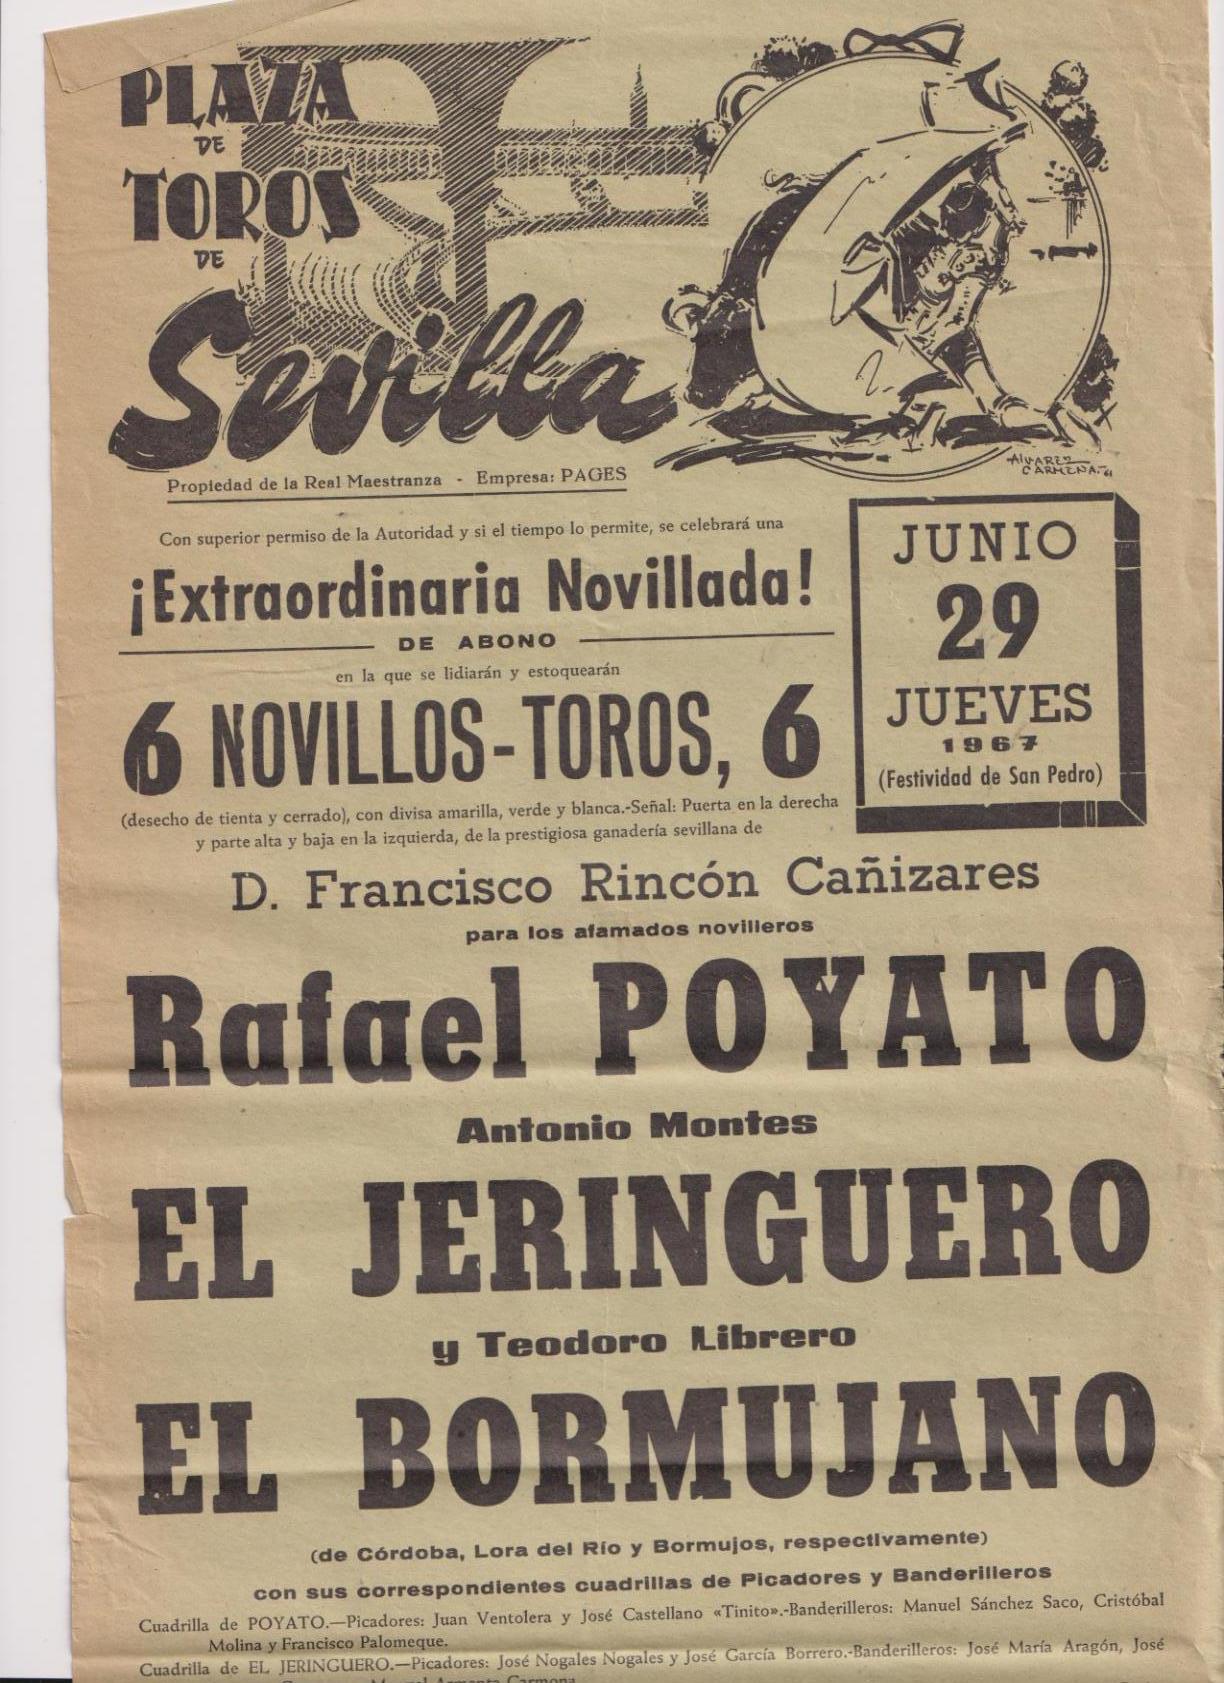 Cartel (45x21) Plaza de Toros de Sevilla 29 de Junio de 1967. Extraordinaria Novillada